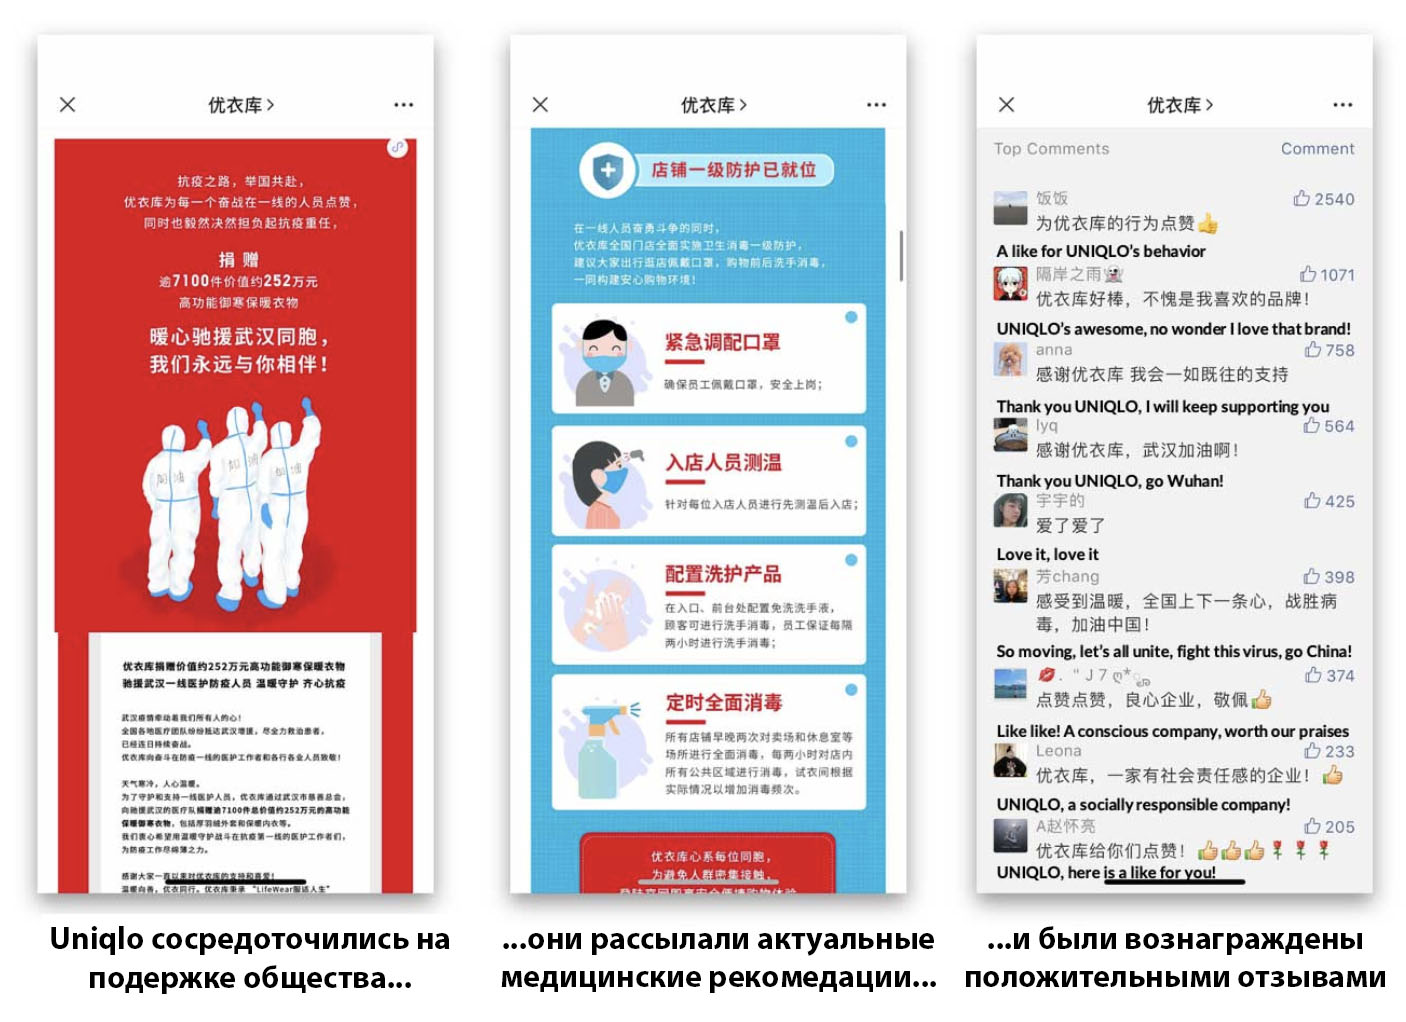 Uniqulo в Китае рассылает медицинские рекомендации